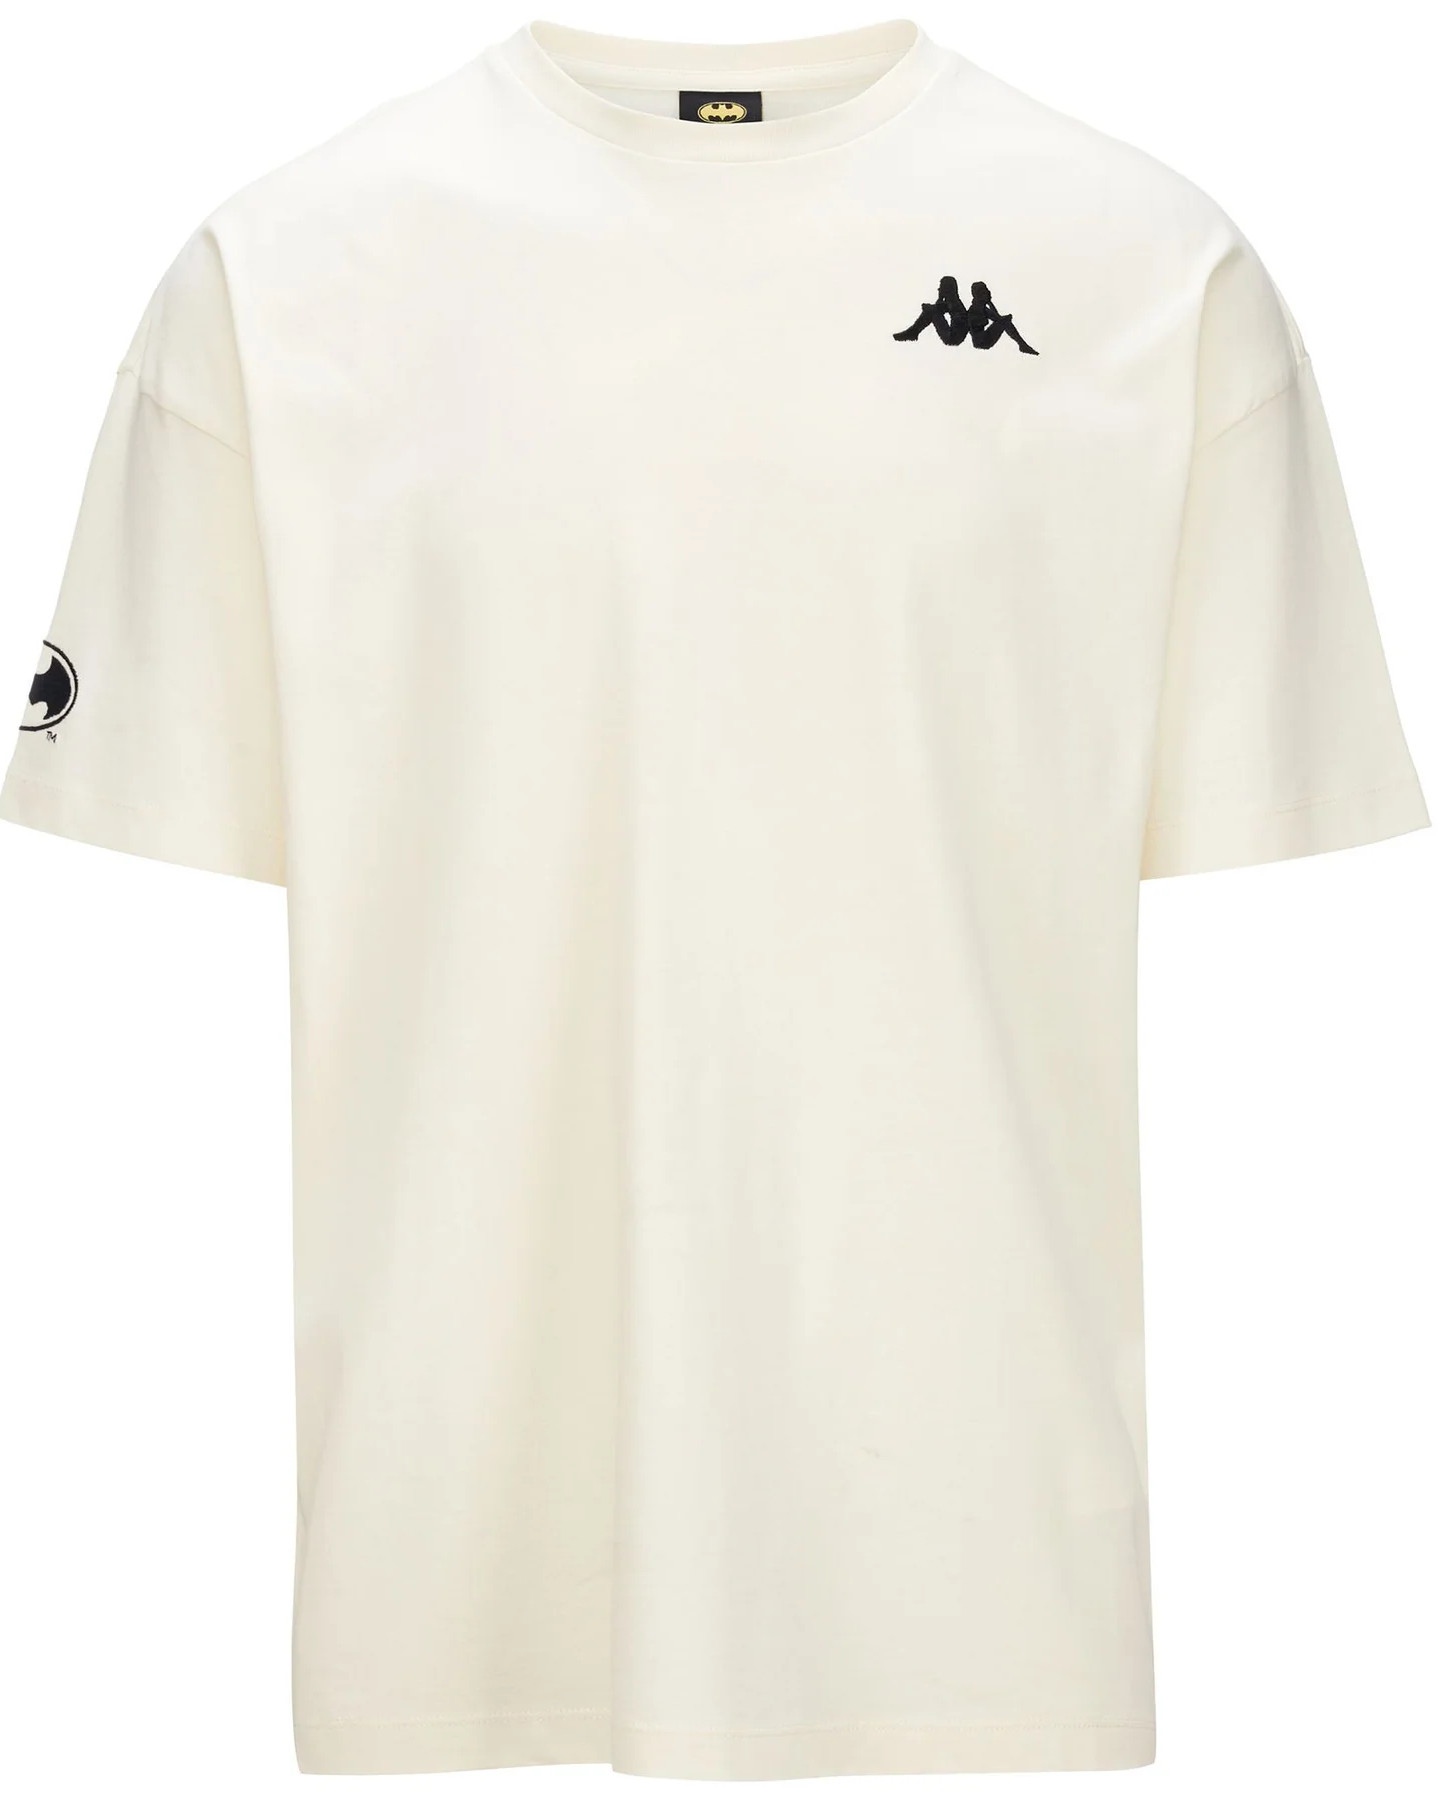  T-shirt maglia maglietta UOMO Kappa beige Authentic Zaki Warner Bros Cotone